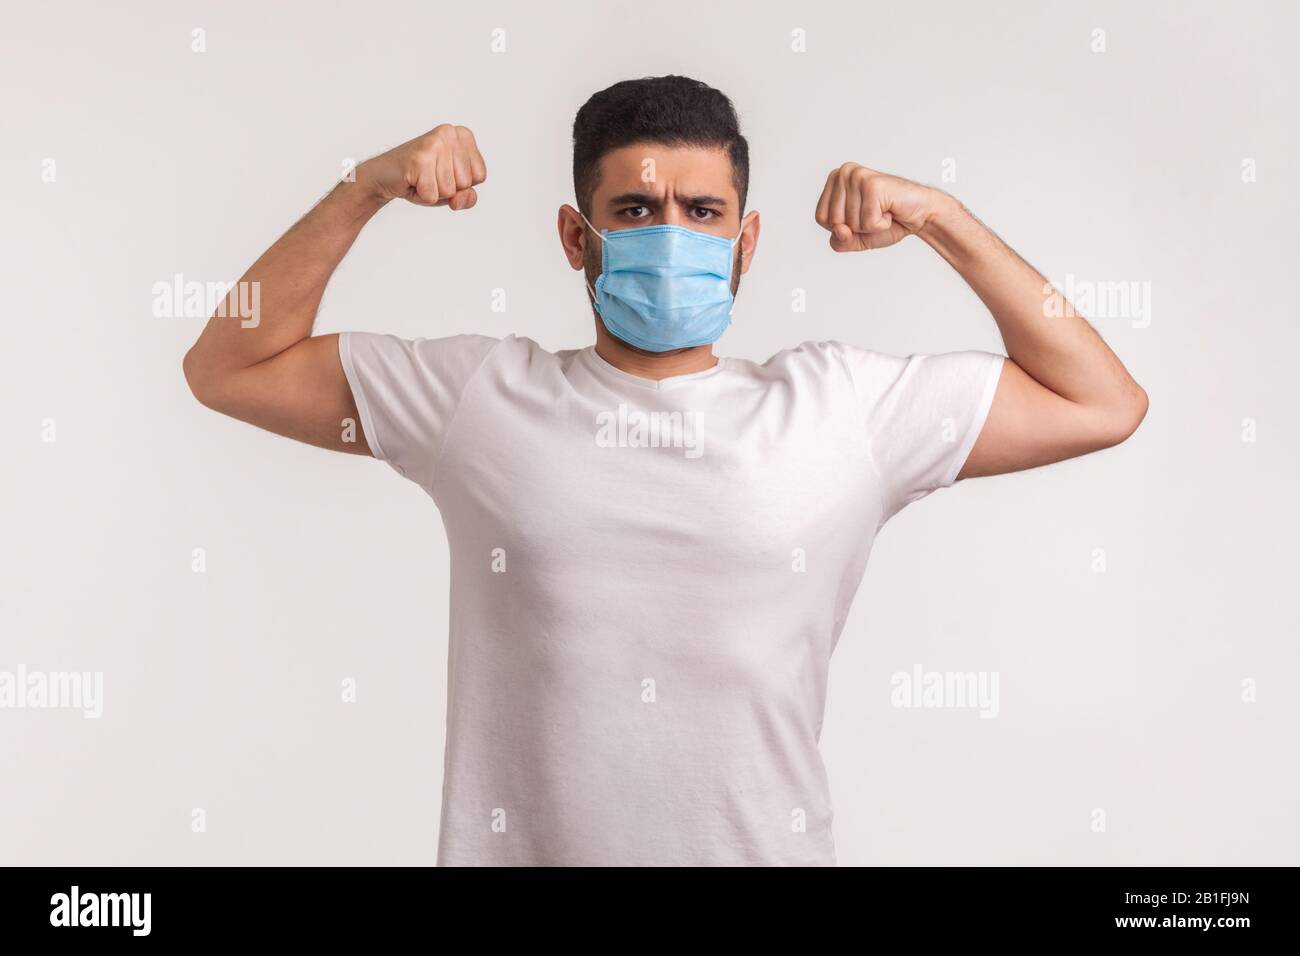 Uomo in maschera igienica che mostra forza e immunità per recuperare da malattie contagiose, malattie respiratorie aeree come l'influenza, coronavirus 2019-nCoV Foto Stock